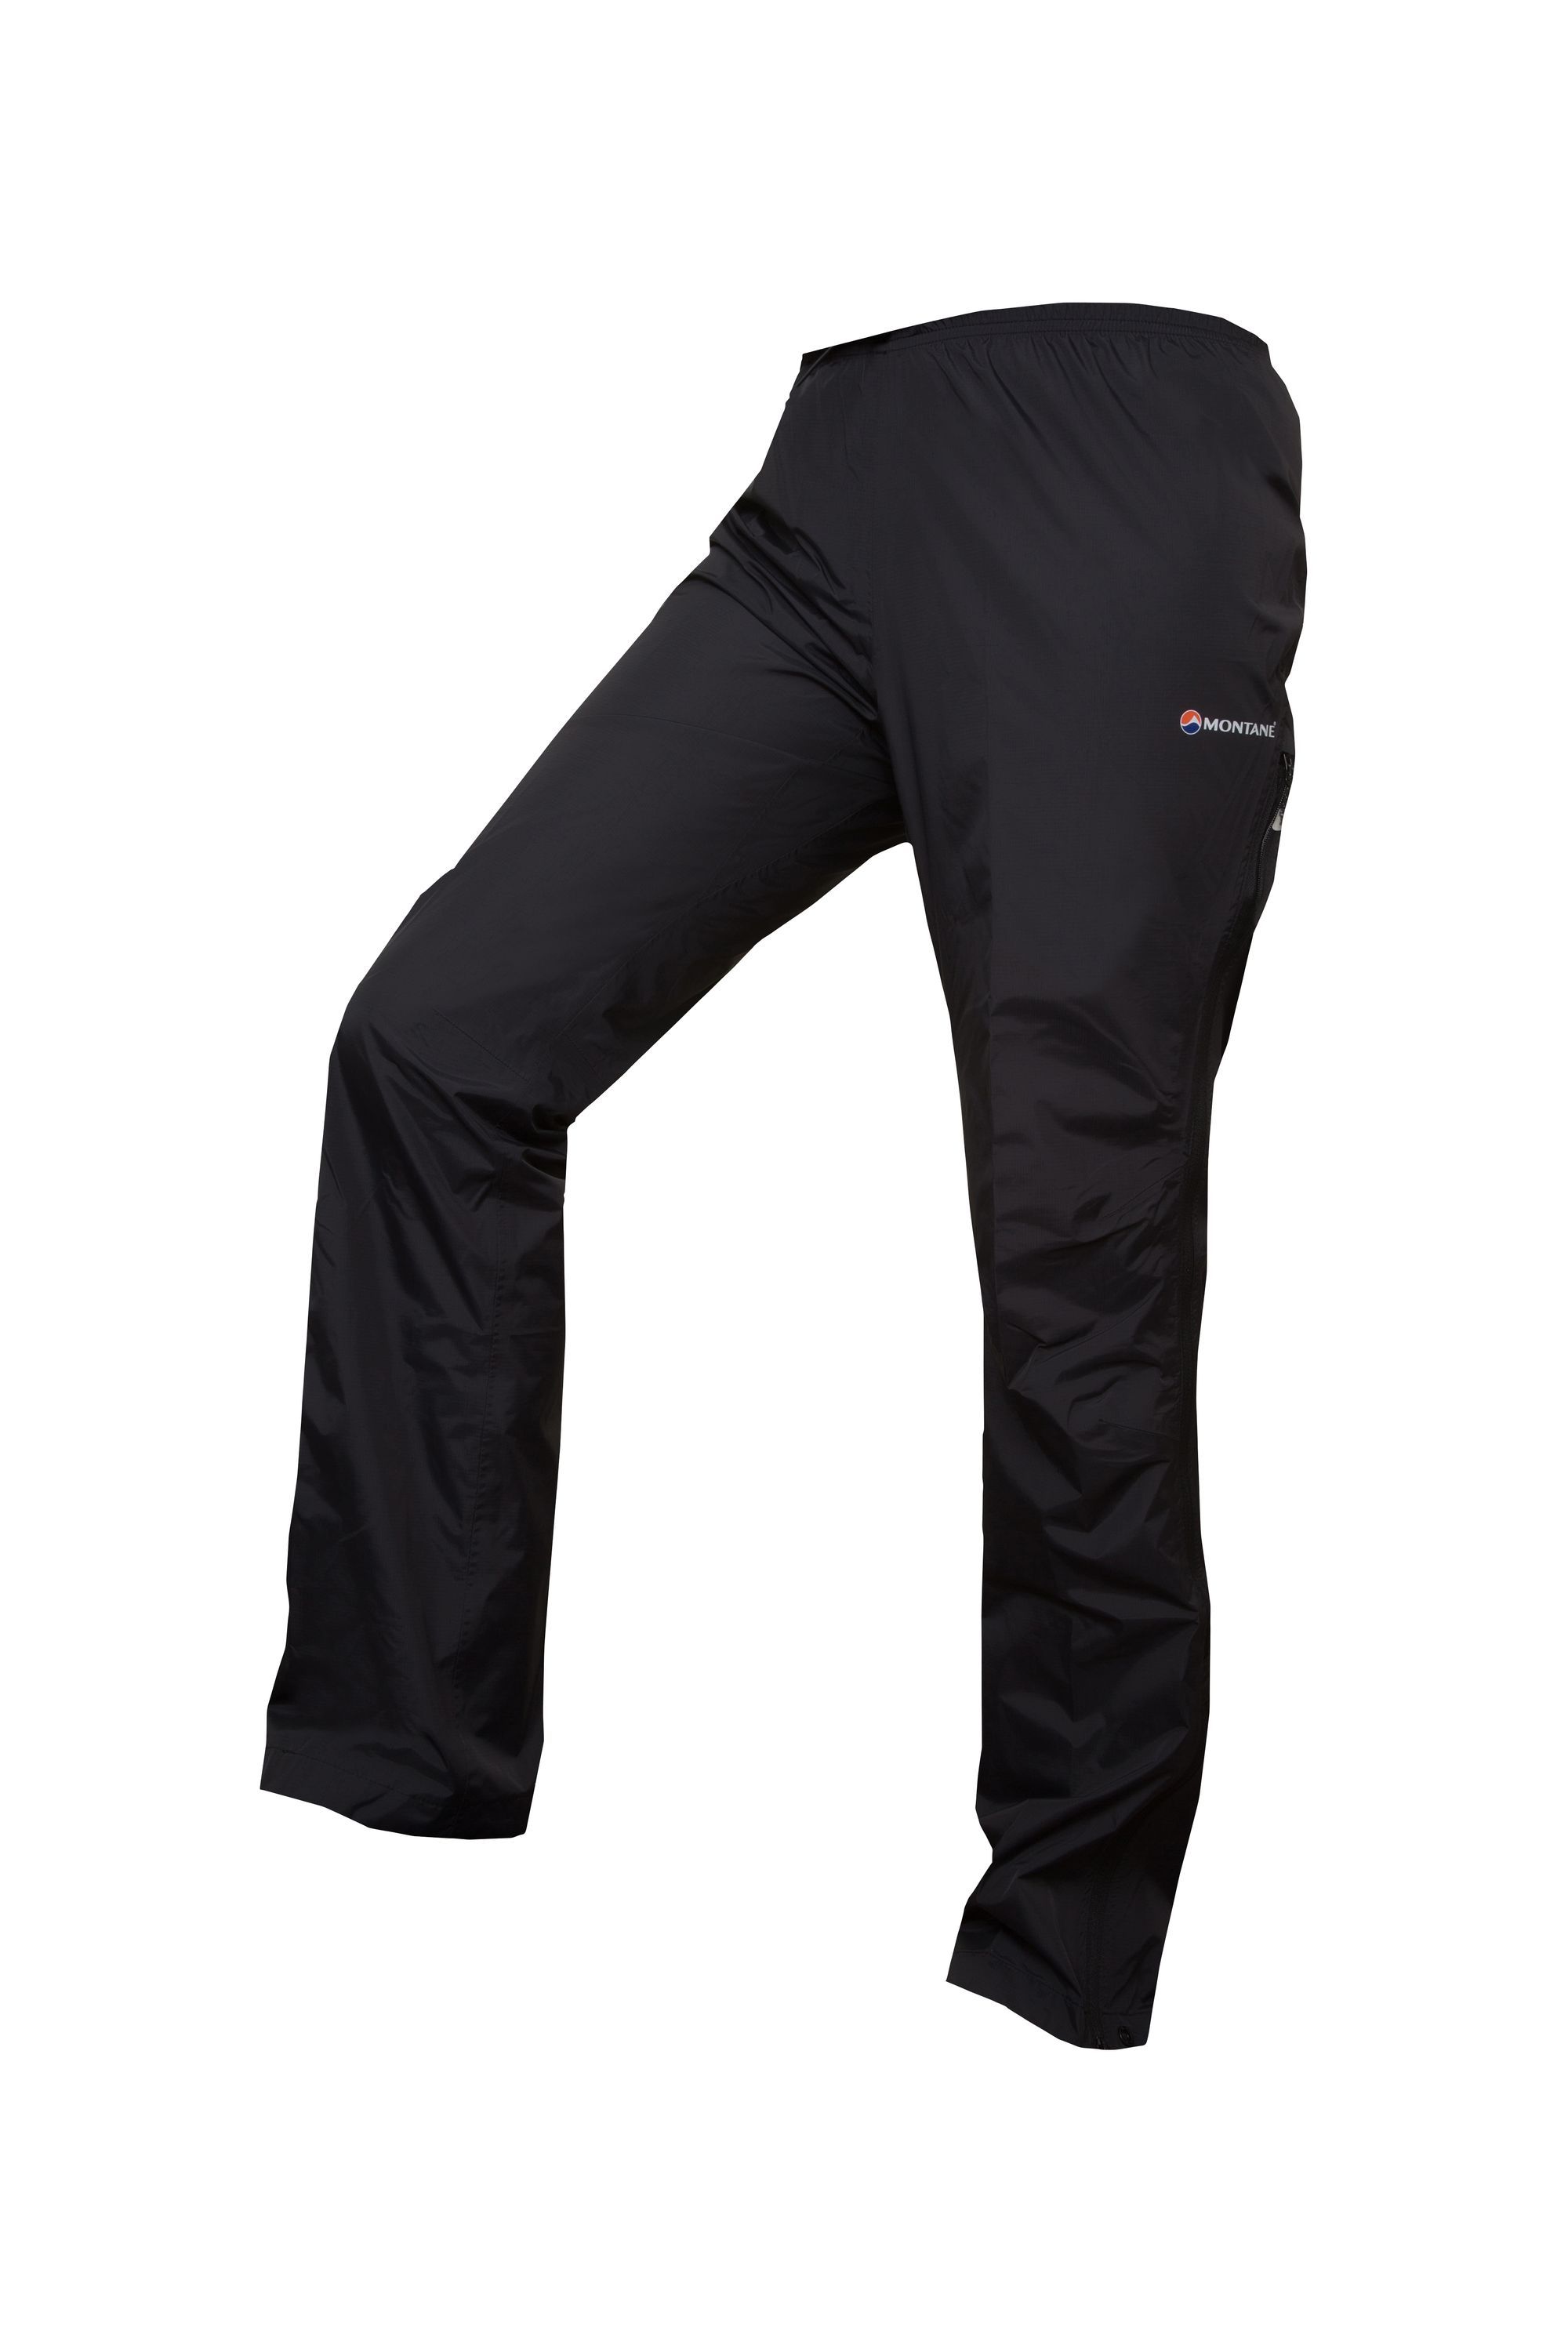 Montane FEM DYNAMO PANTS-REG LEG-BLACK-UK8/XS dámské kalhoty černé